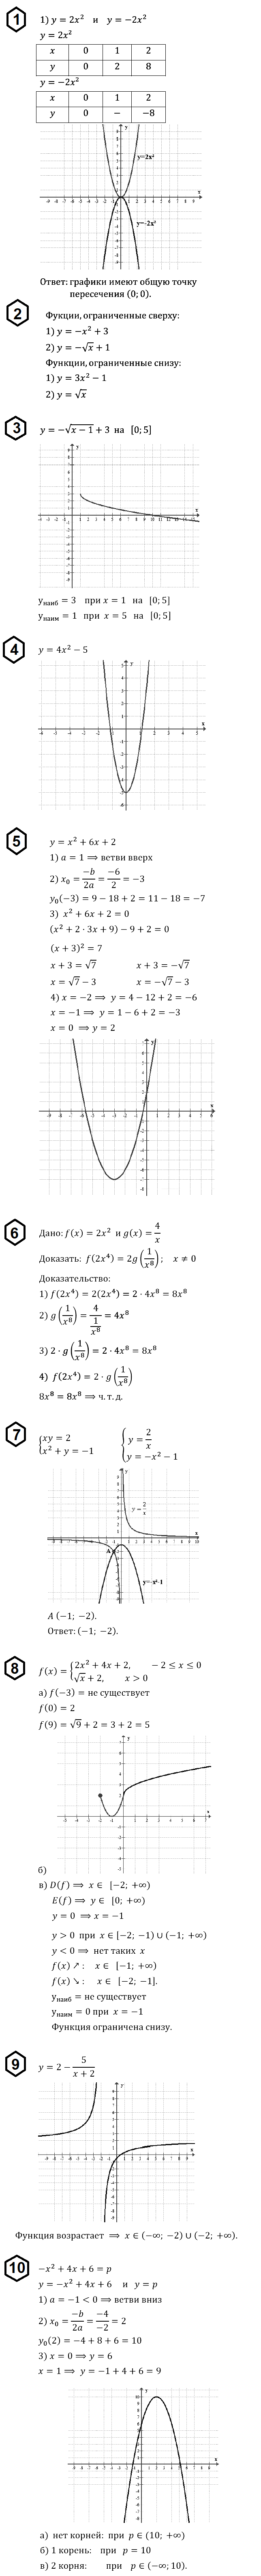 Мордкович Алгебра 8 ДКР-3